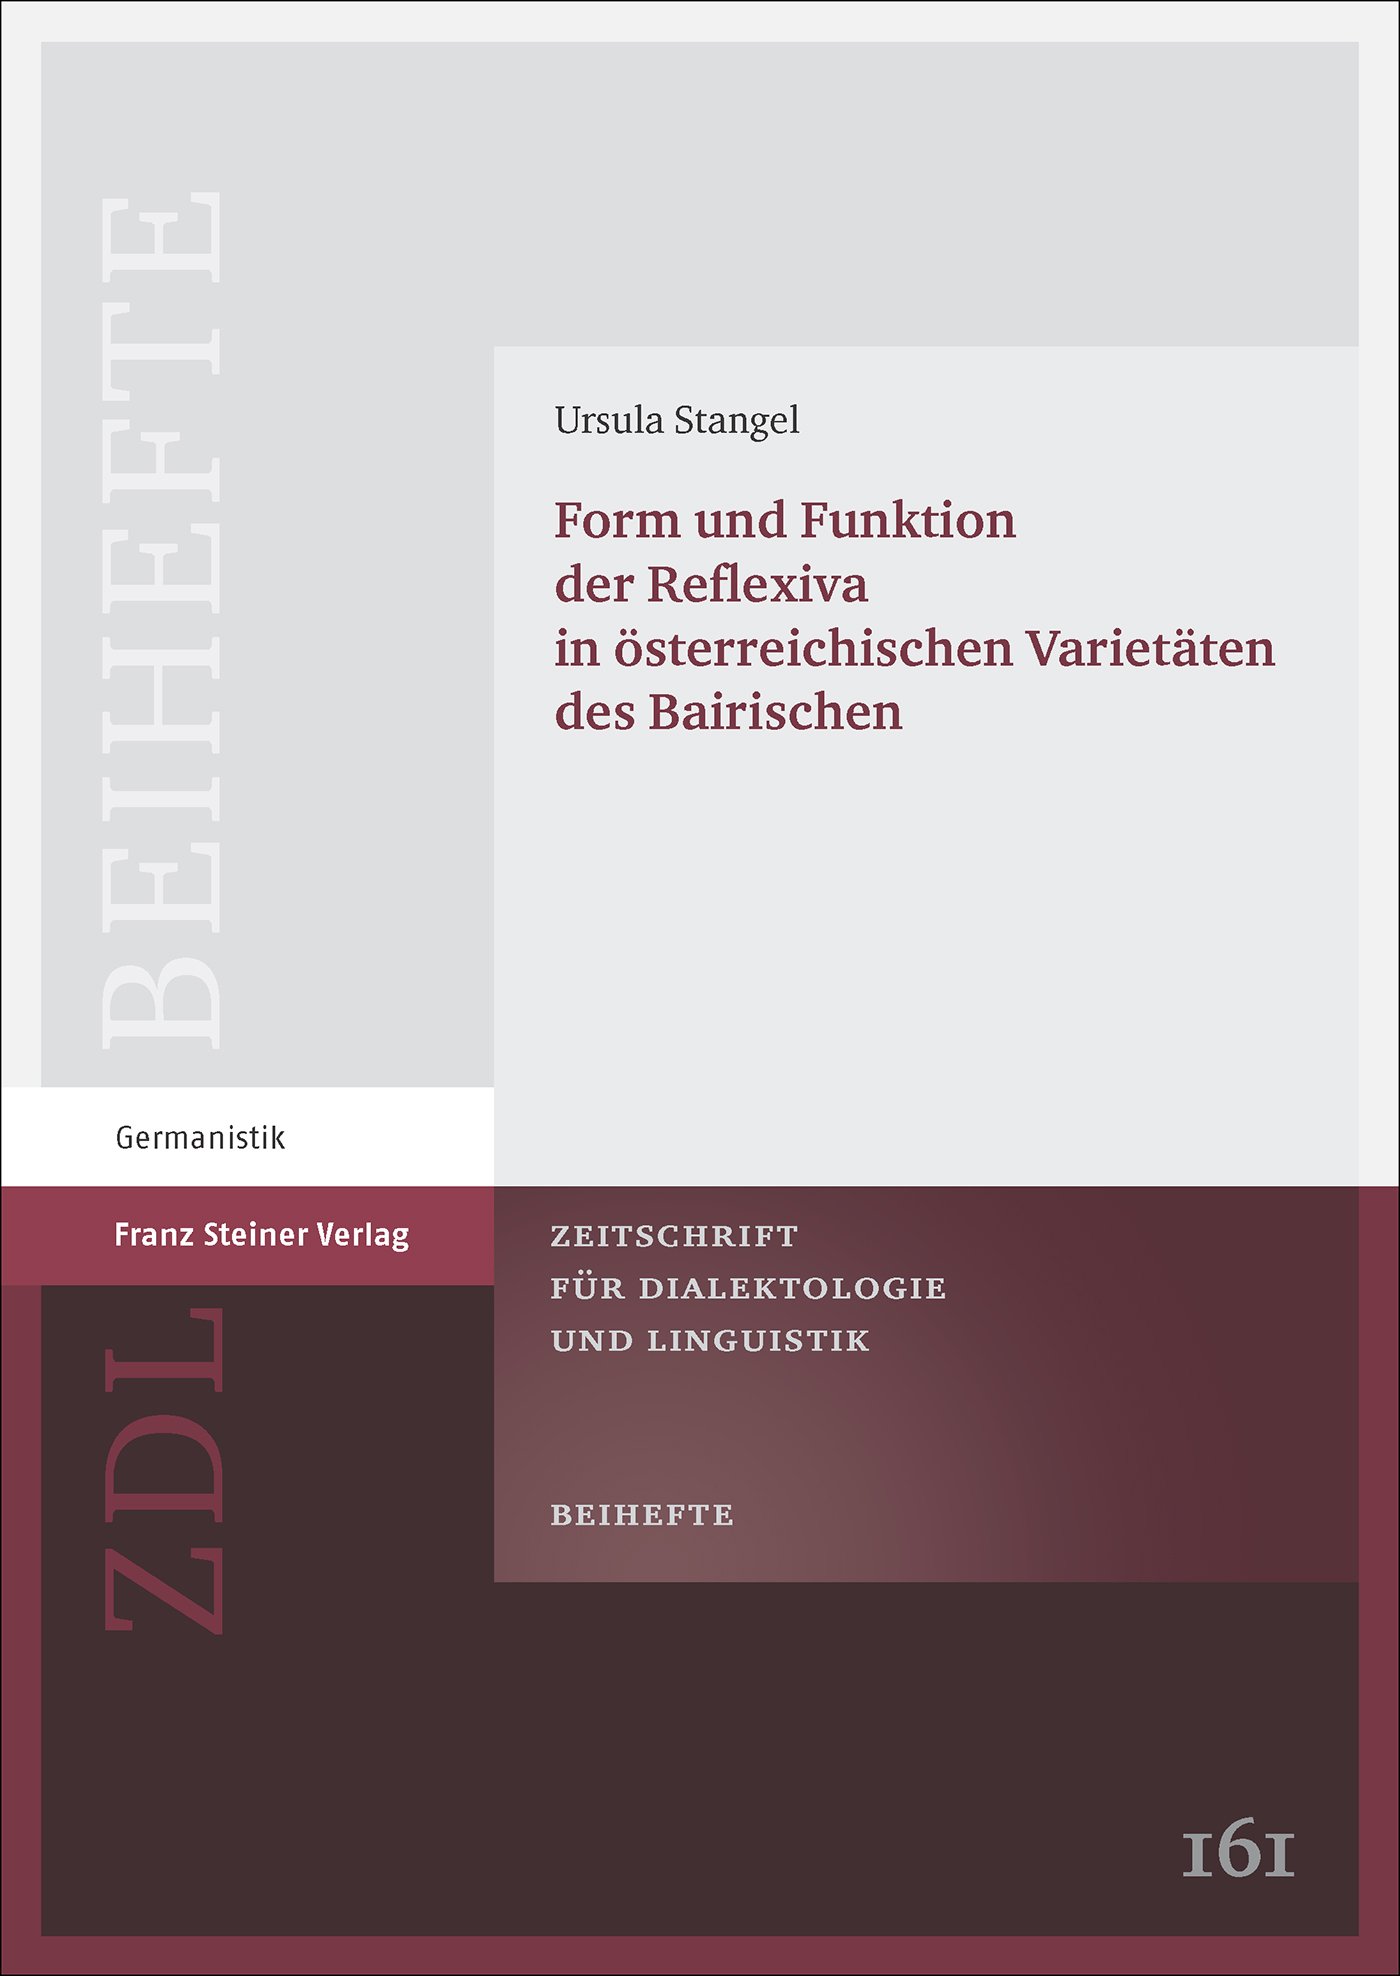 Form und Funktion der Reflexiva in österreichischen Varietäten des Bairischen